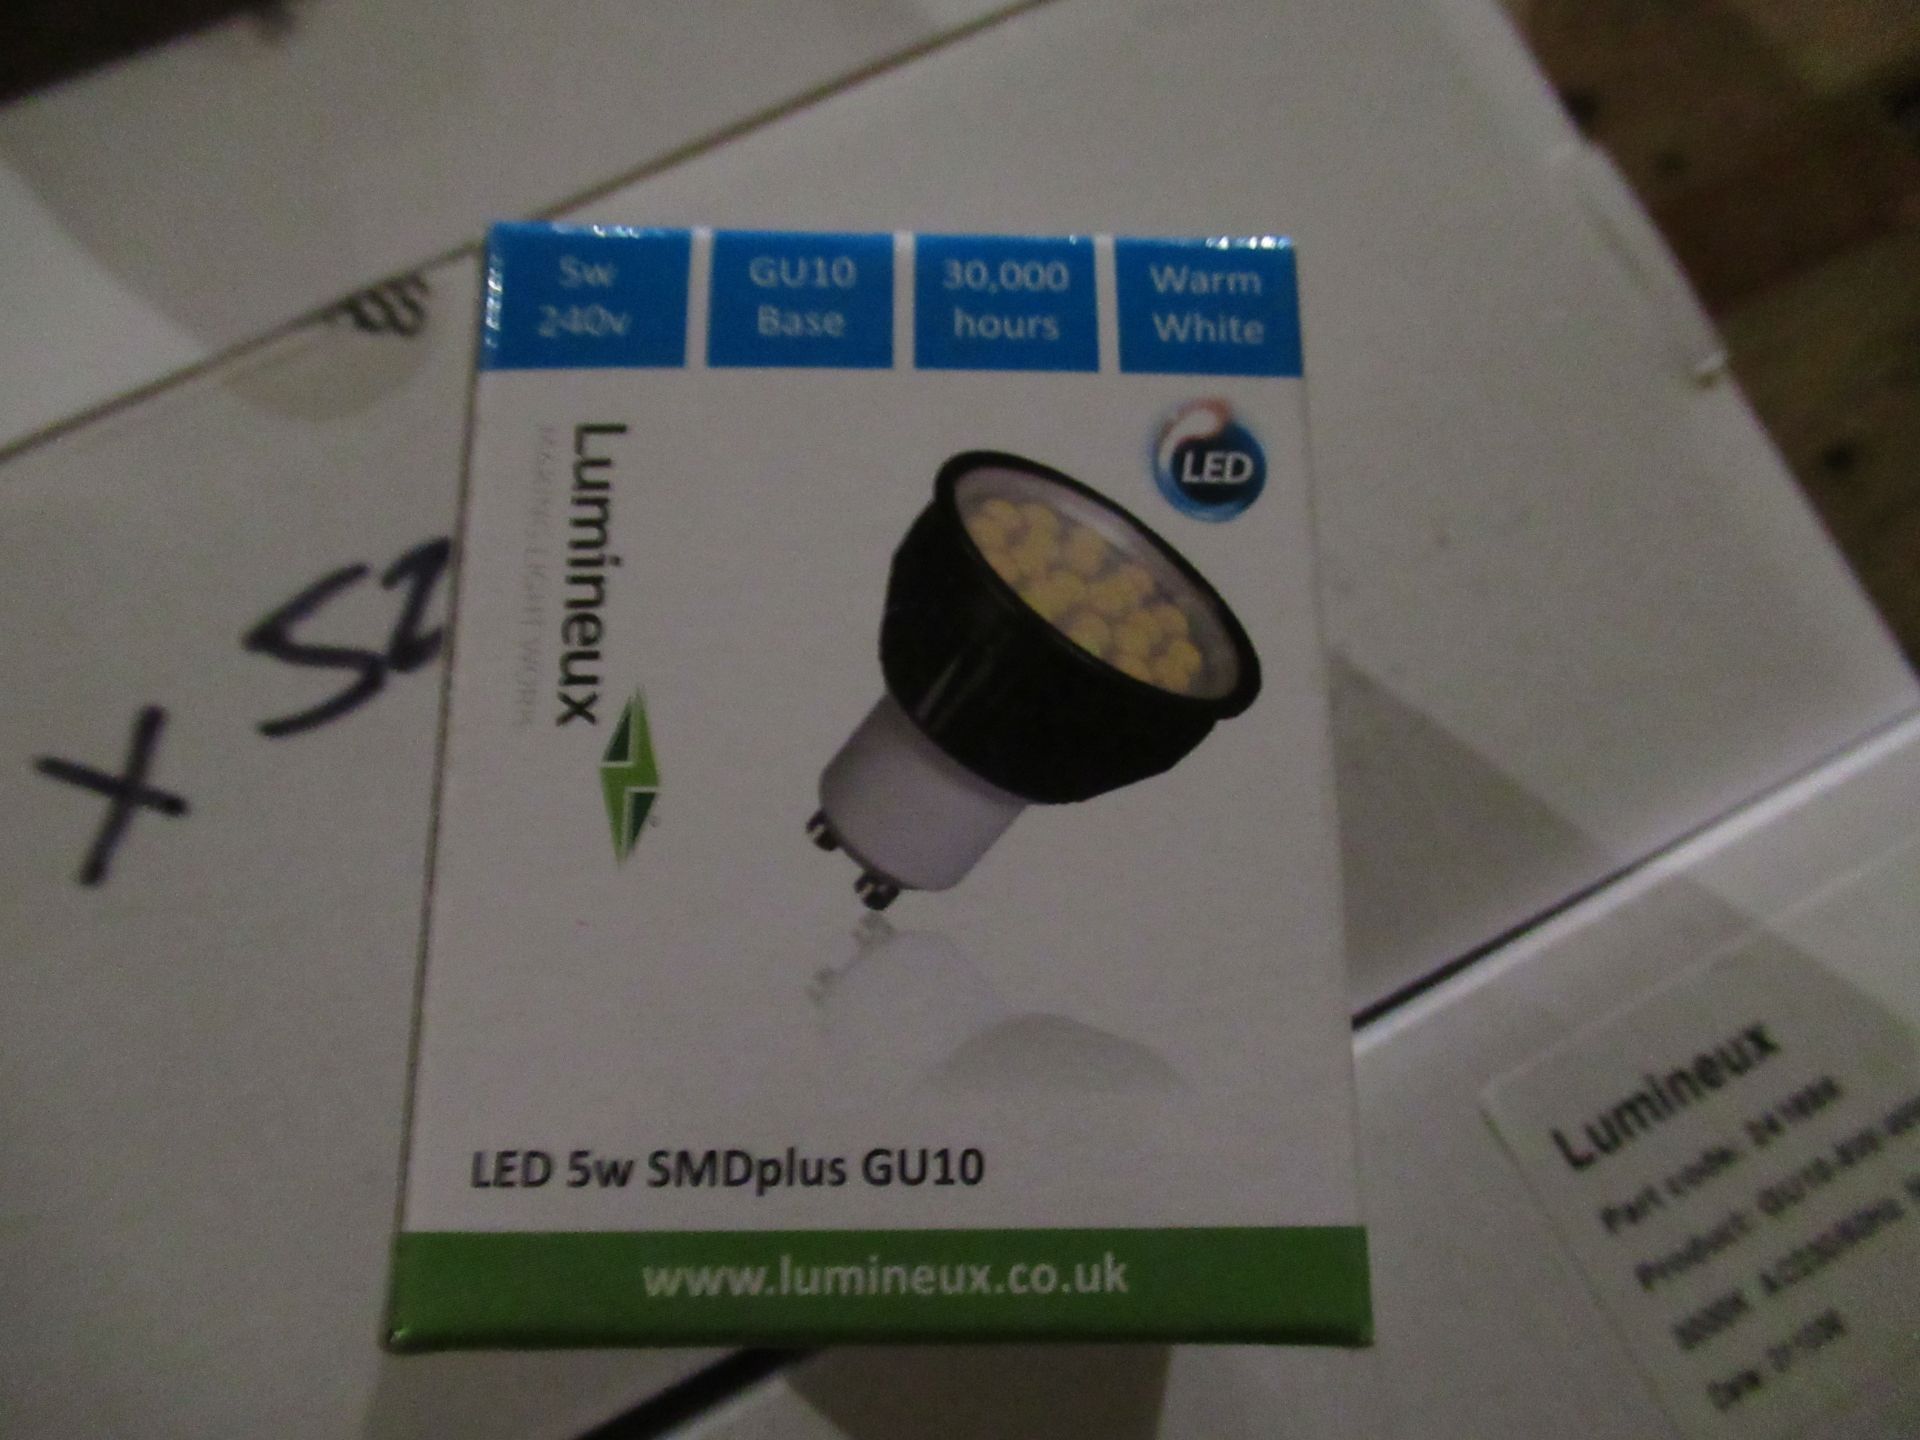 10 x 10 Lumineux LED GU10 SMD Plus 5W 3000K - Image 2 of 4